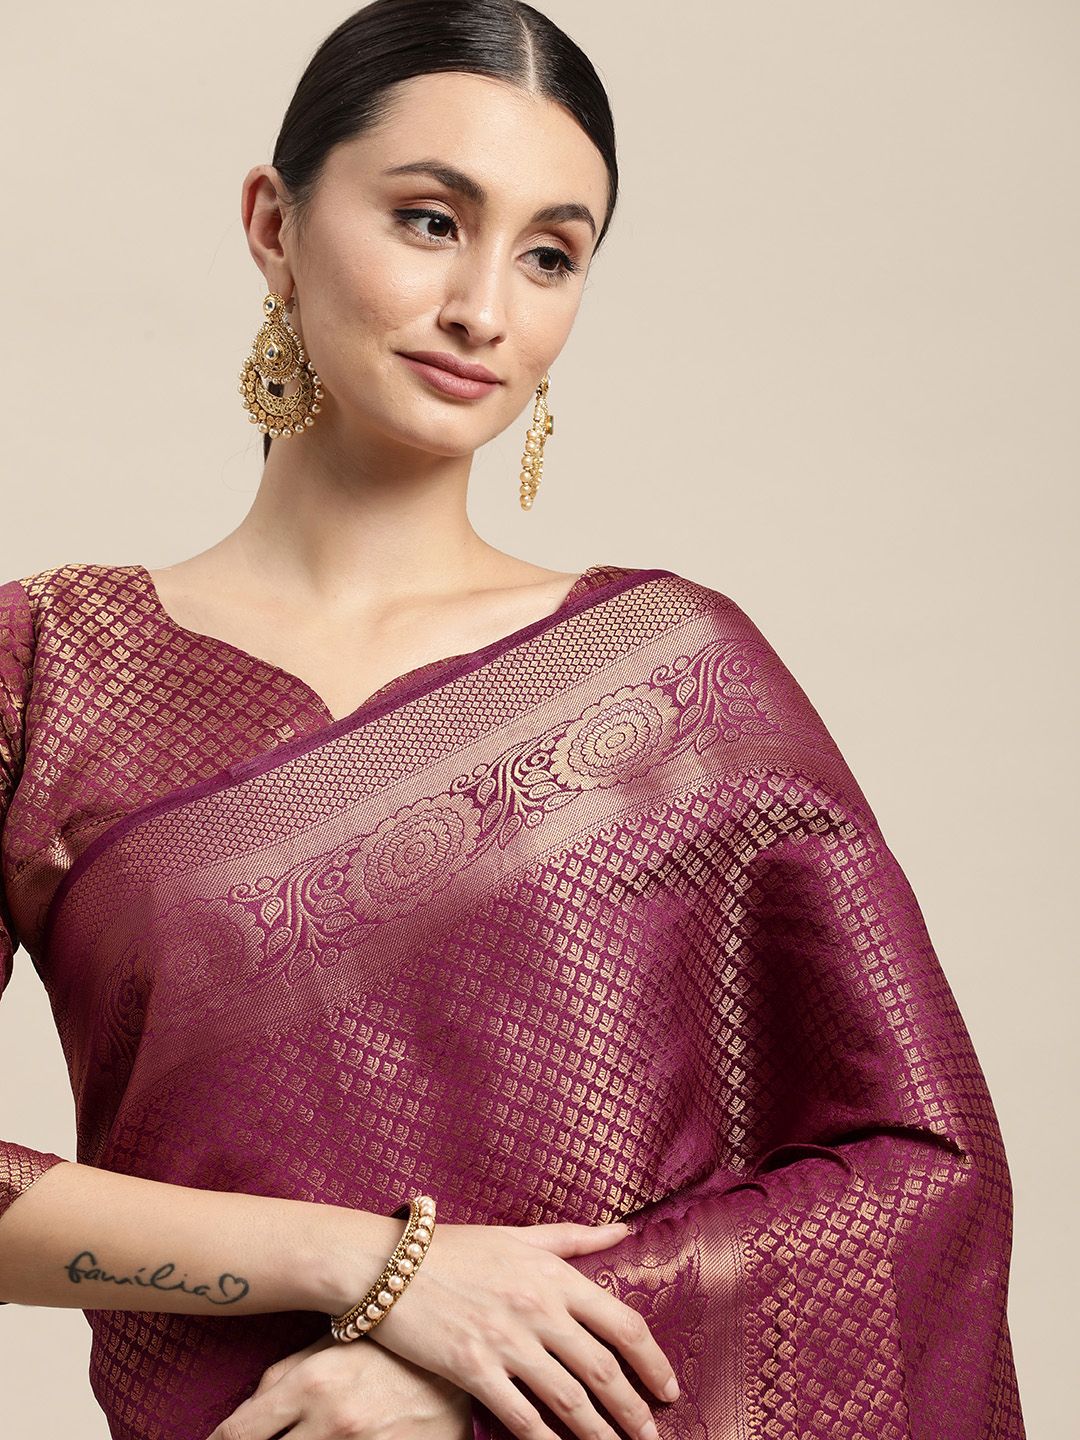 VAIRAGEE Purple & Golden Ethnic Motif Woven Pure Silk Kanjeevaram Saree Price in India